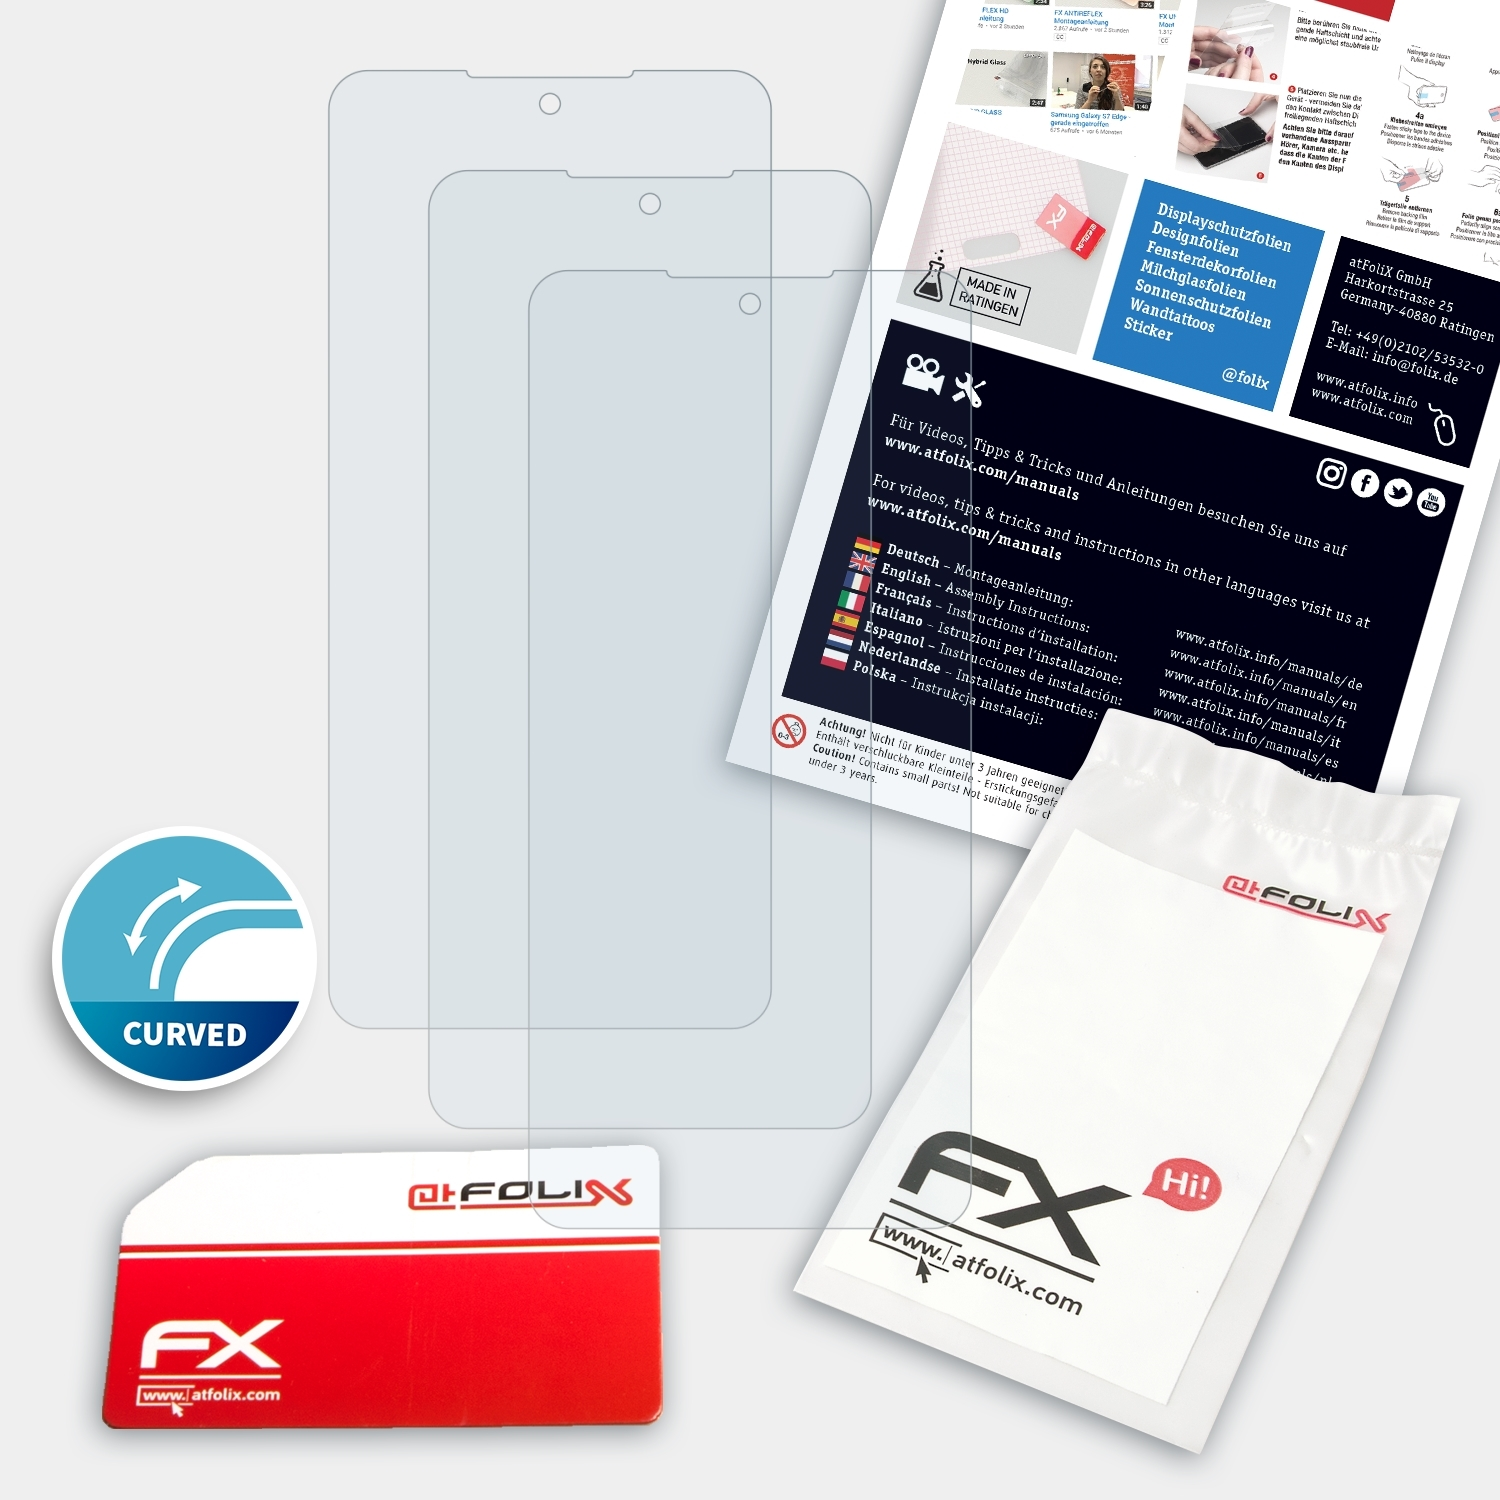 ATFOLIX 3x Displayschutz(für FX-ActiFleX Xiaomi K40) Redmi